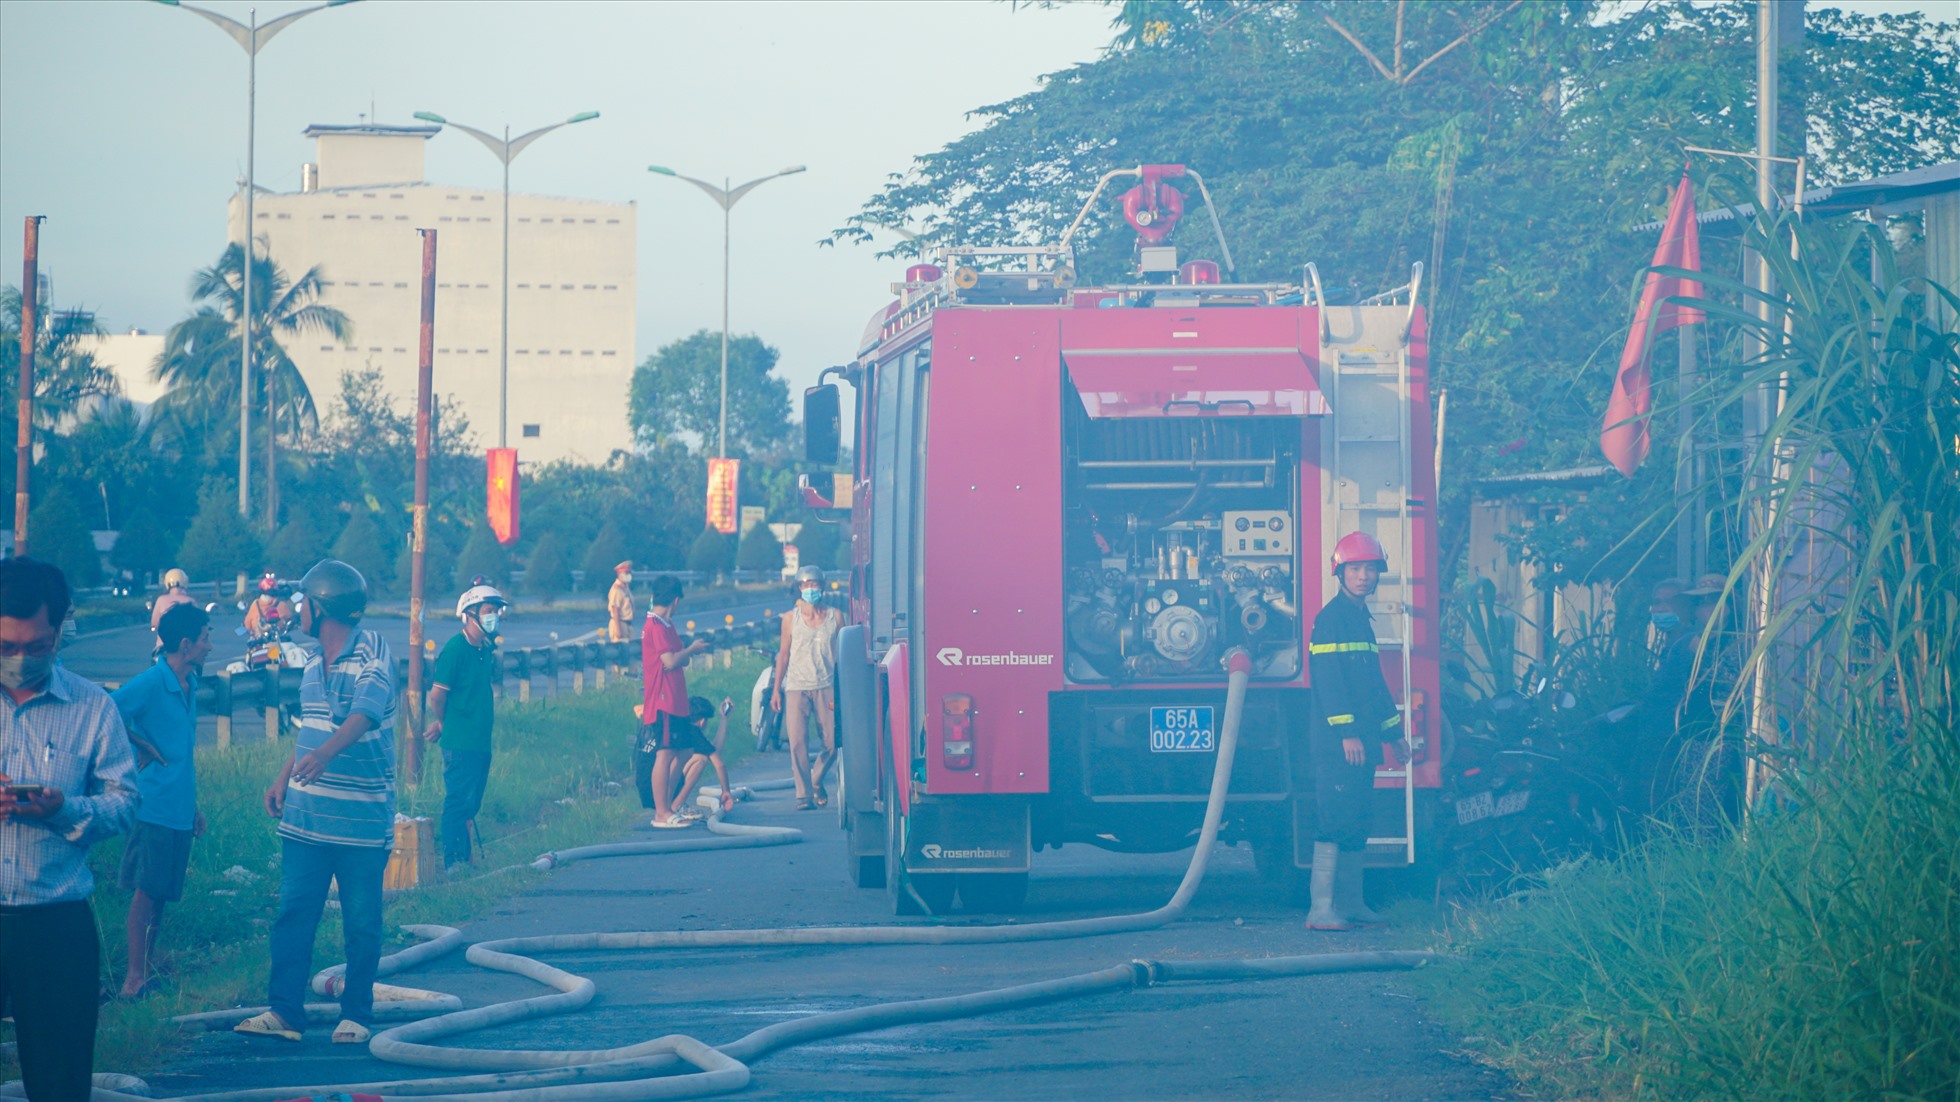 Quan sát tại hiện trường có 5 xe chữa cháy đã đến để chữa cháy.